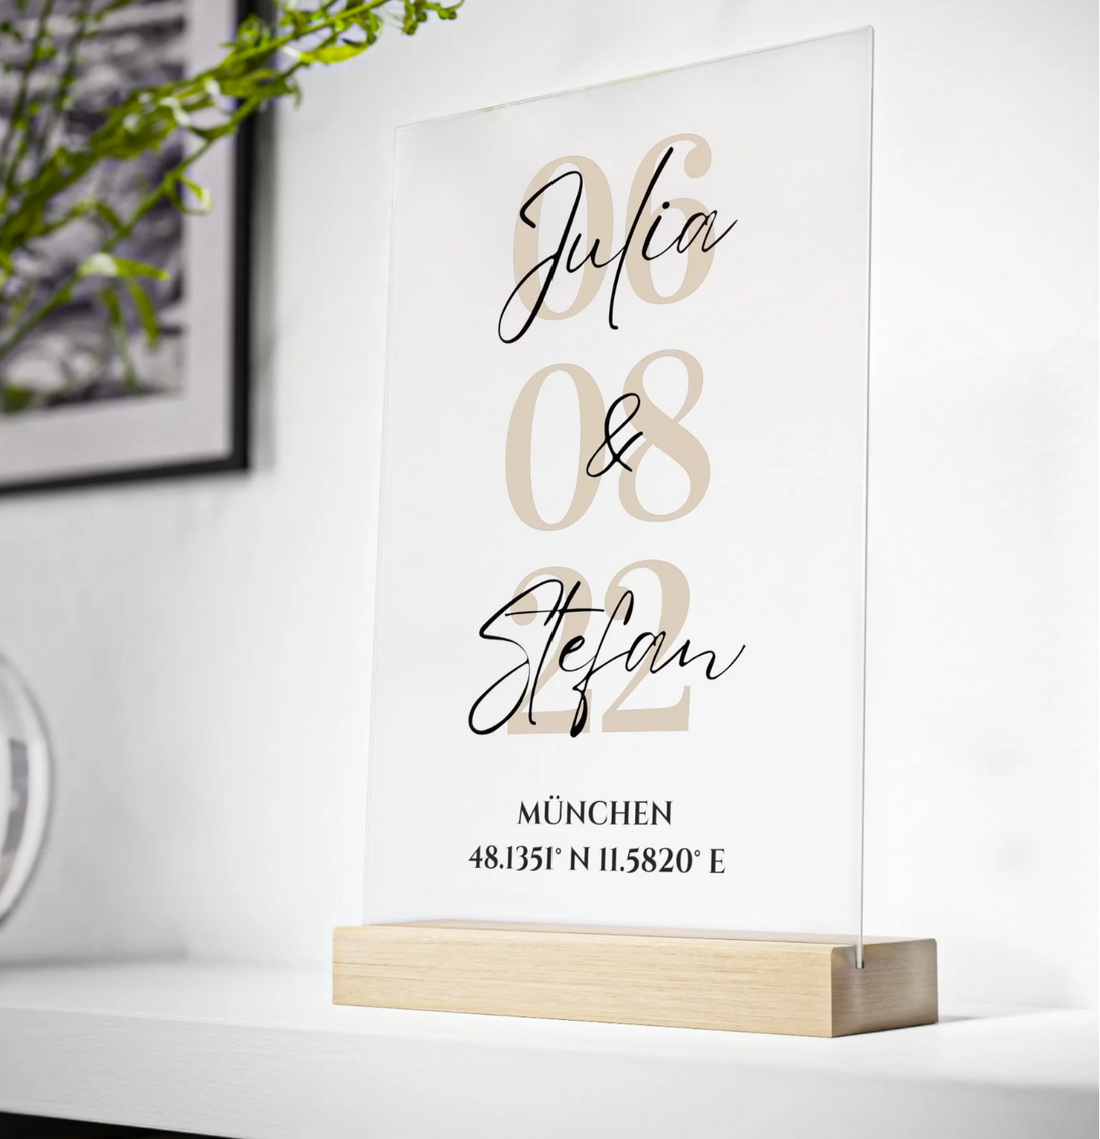 Die besten personalisierten Geschenke für Verlobungen: Acrylglas-Geschenke mit individueller Note